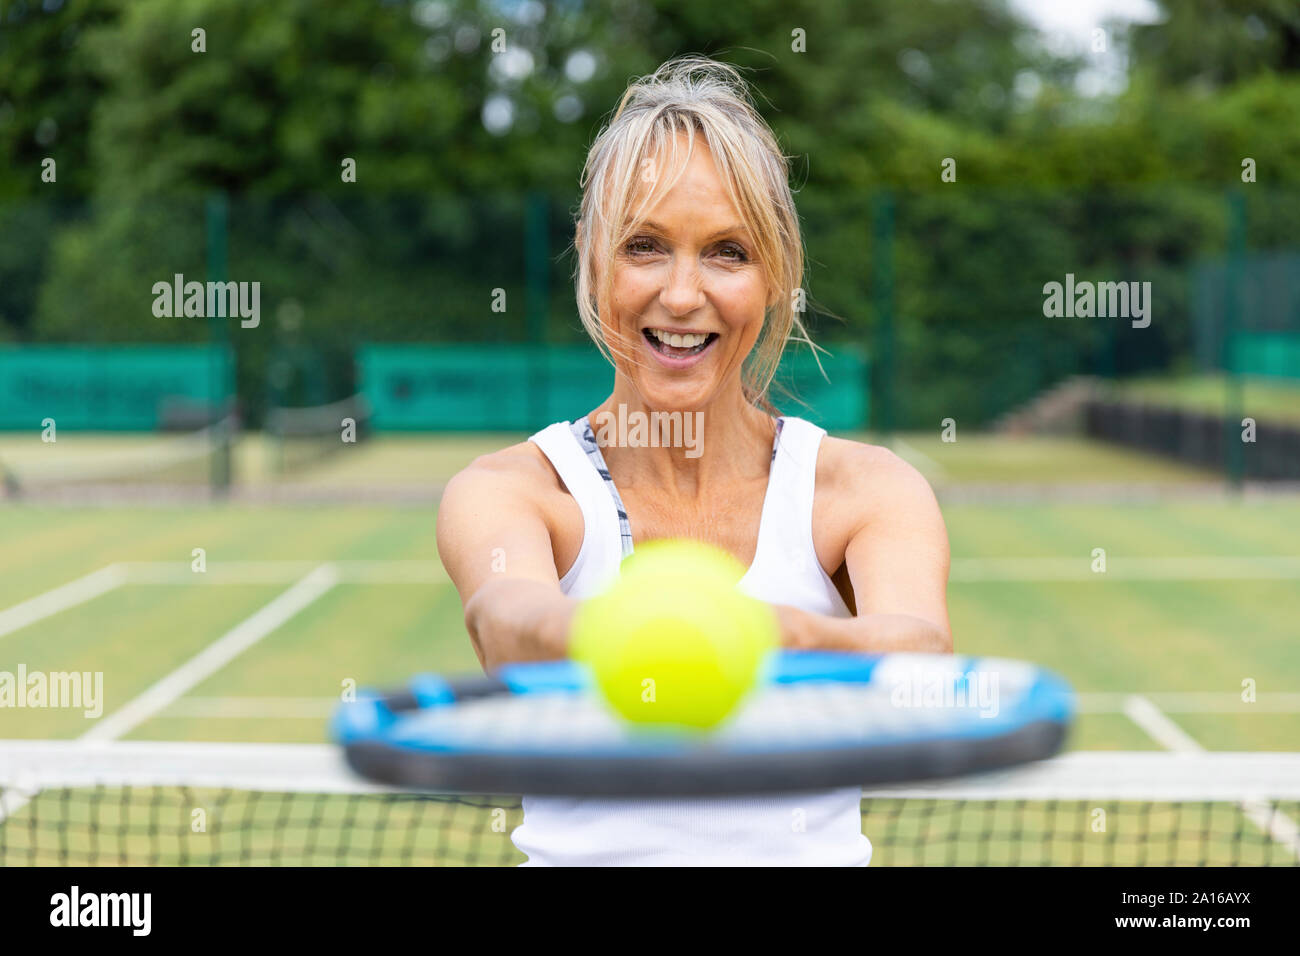 Portrait of laughing young woman une raquette de tennis avec une balle au tennis club Banque D'Images